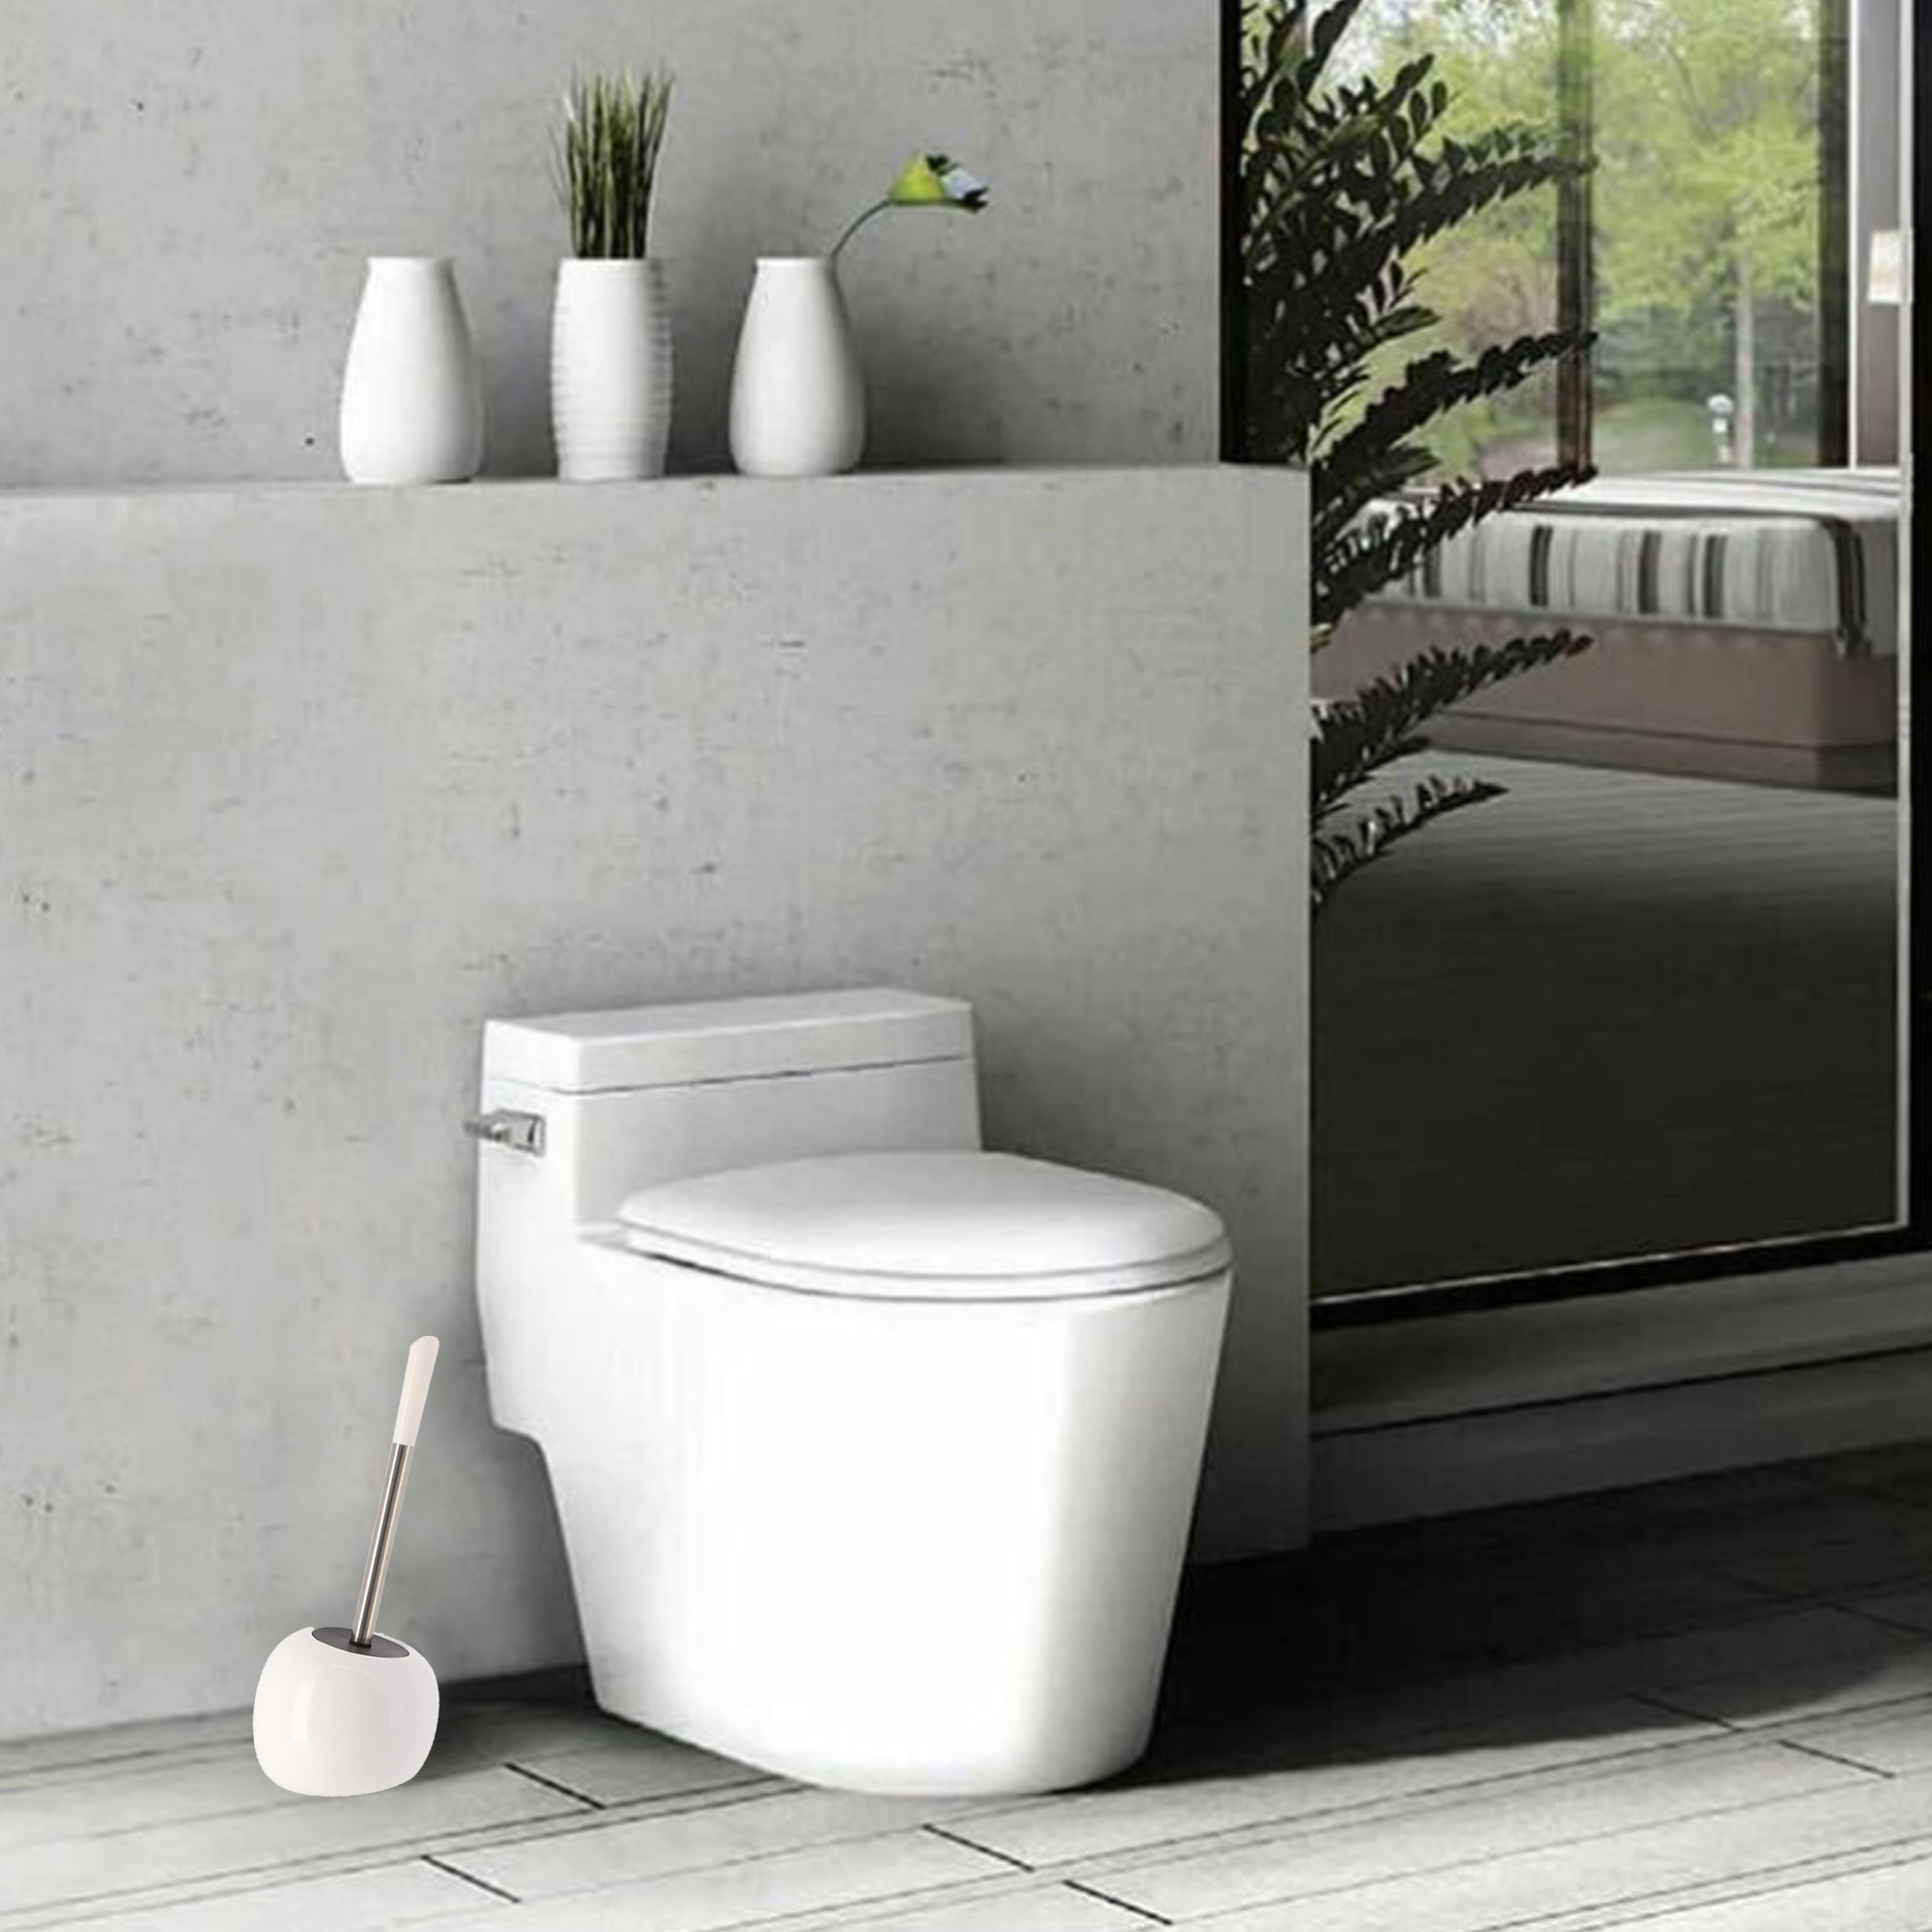 EVIDECO PISE Freestanding White Toilet Brush and Holder Set